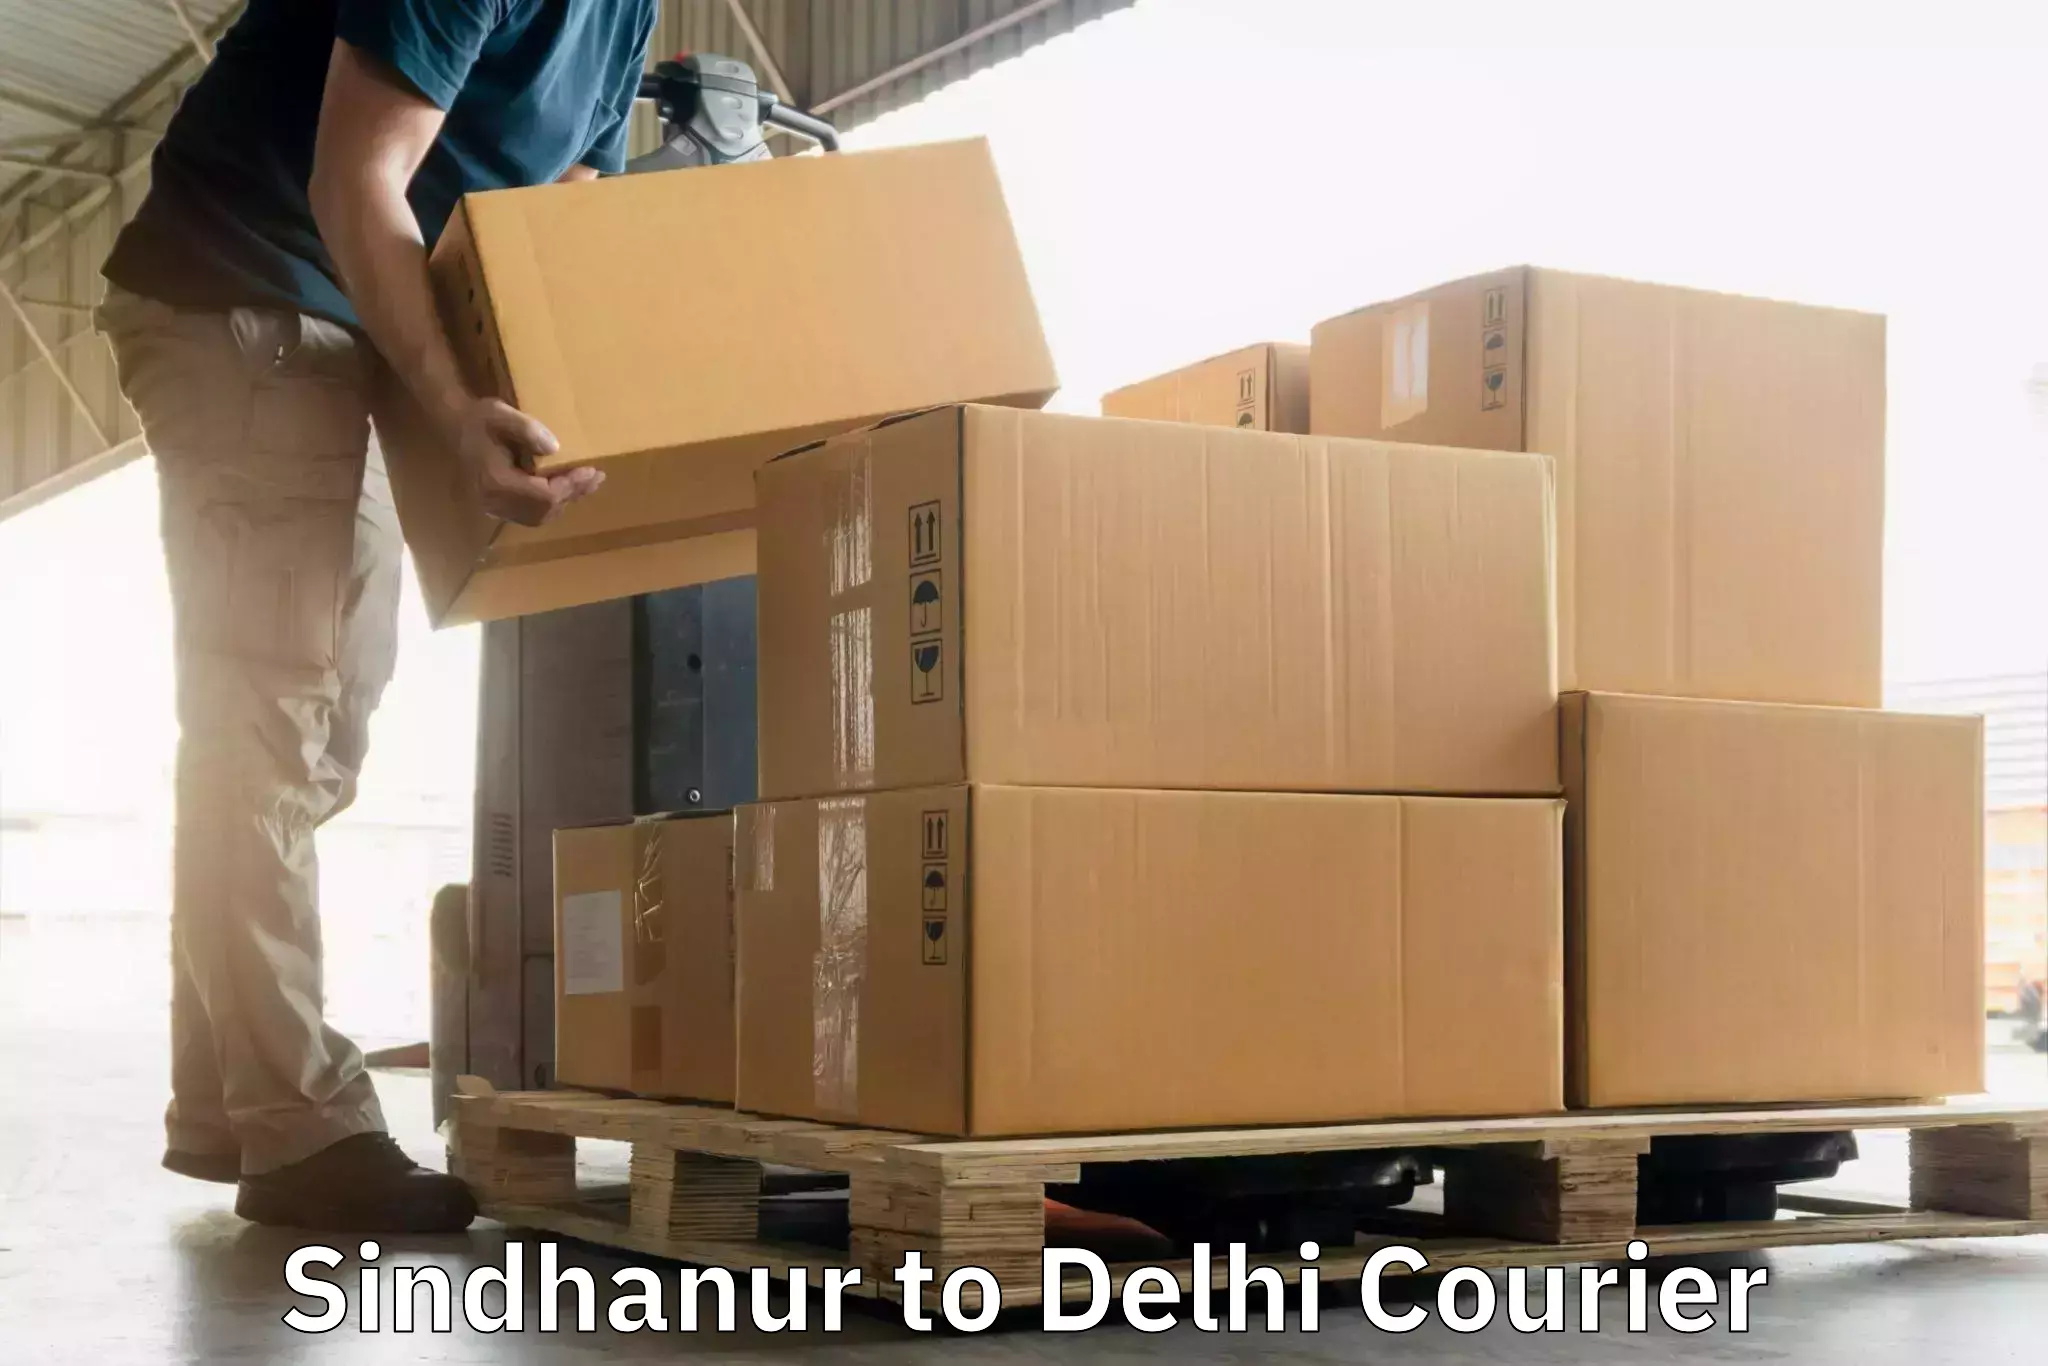 Flexible delivery scheduling Sindhanur to Jawaharlal Nehru University New Delhi